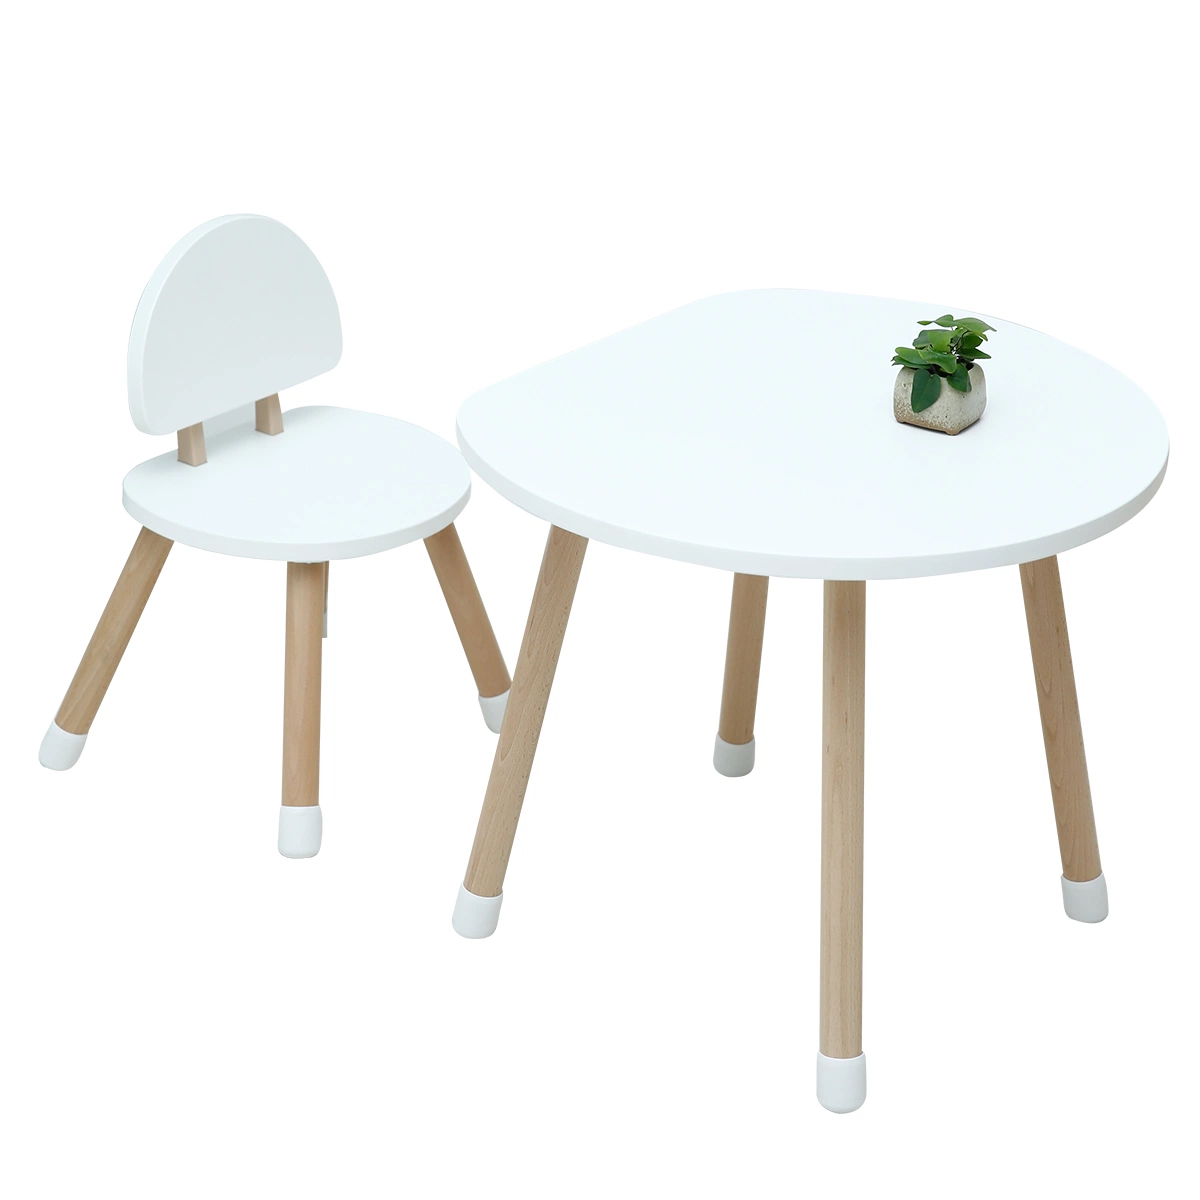 Kindermöbel ausgezeichnete Qualität Holz Tisch und Stuhl-Sets Für Kinder